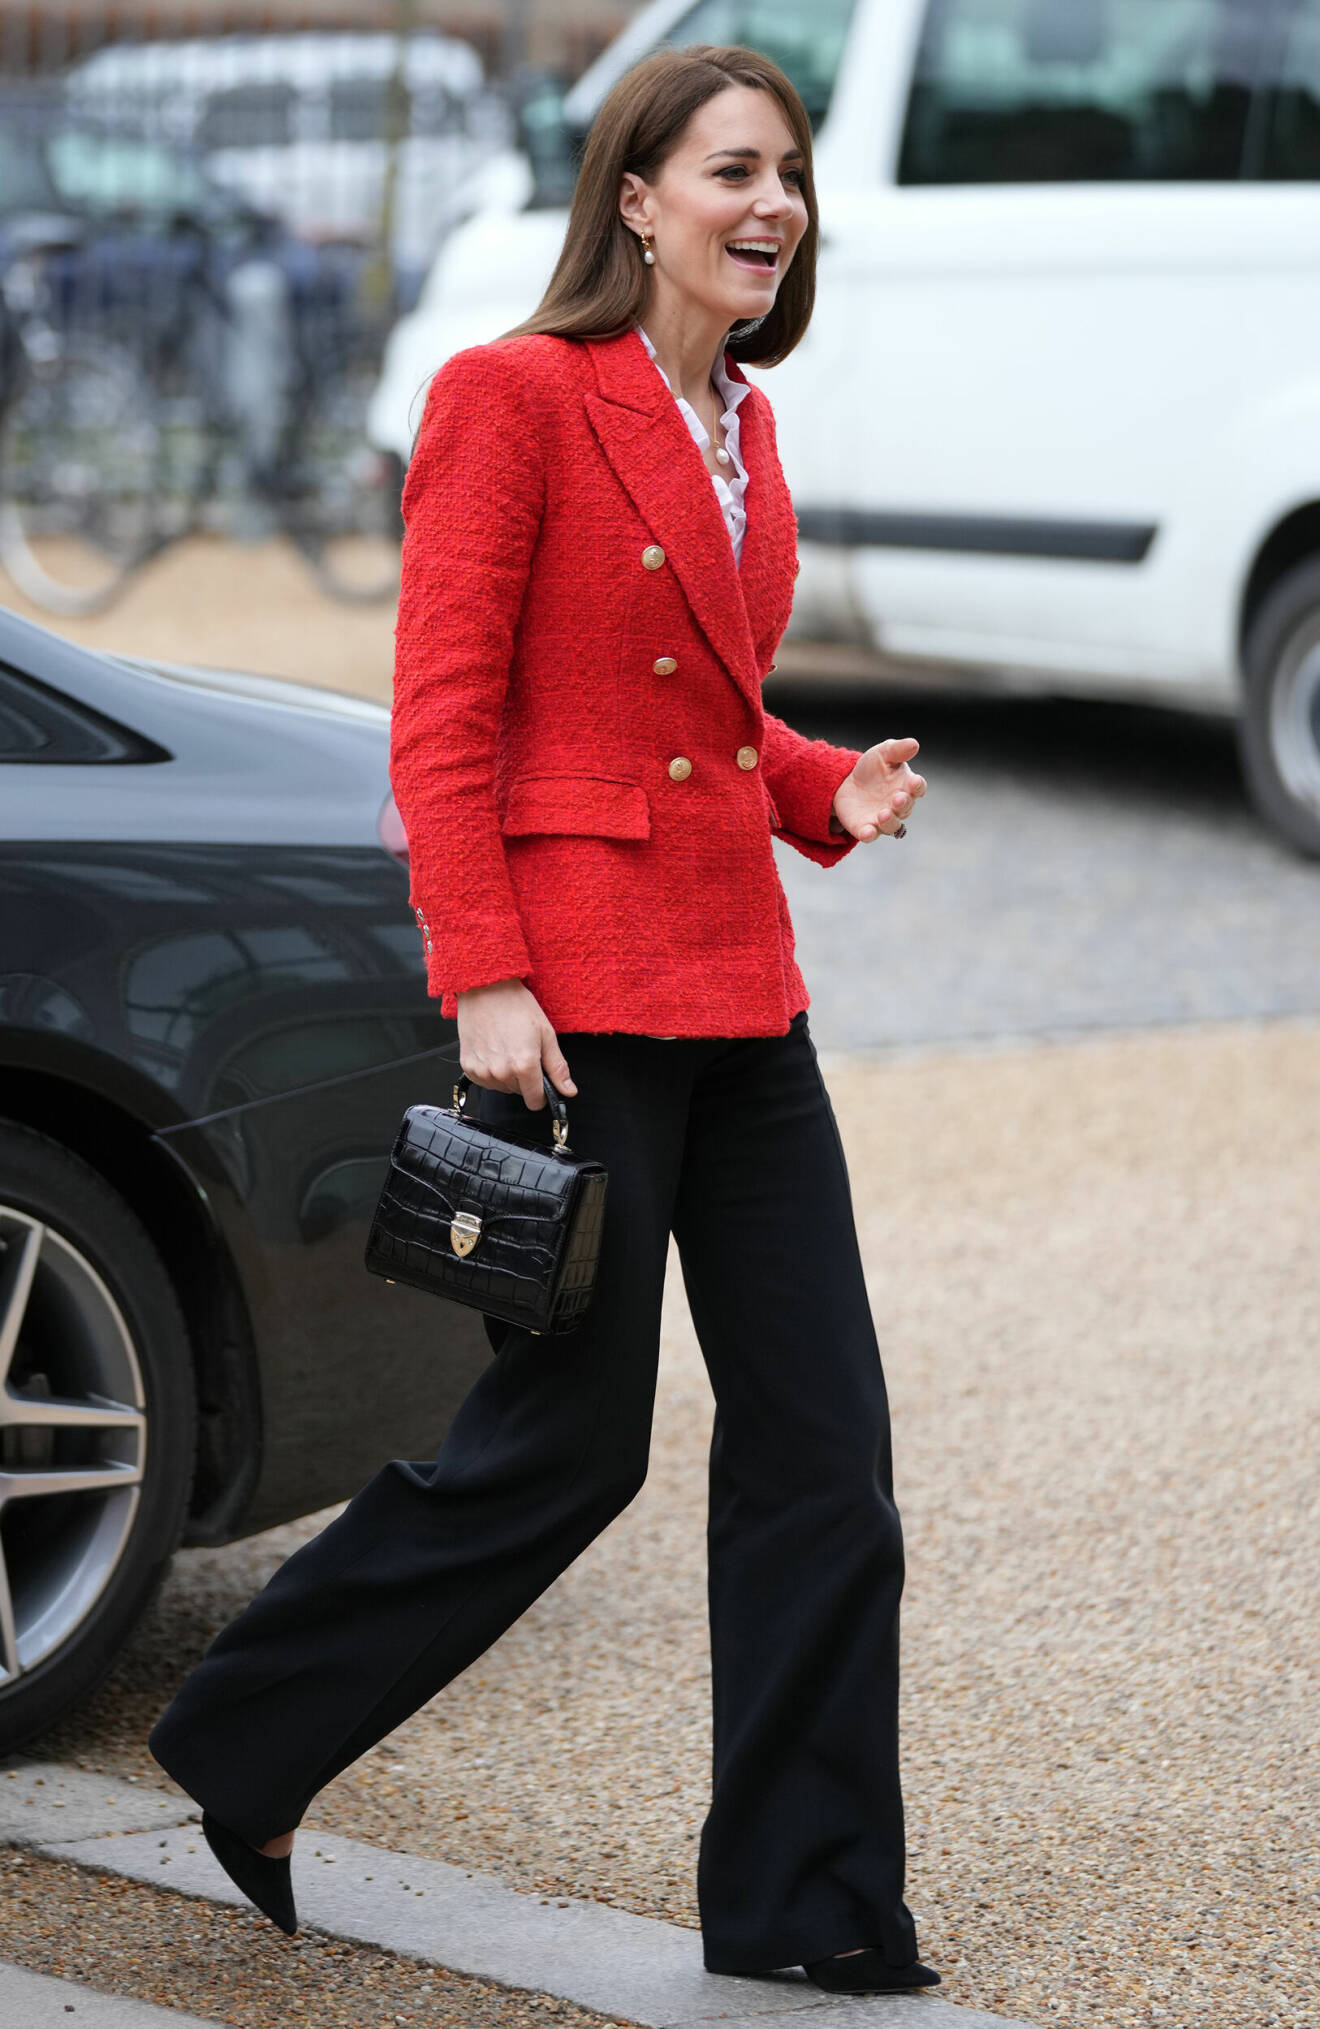 Hertiginnan av Cambridge besöker Danmark och valde dagen till ära att klä sig i landets färger.